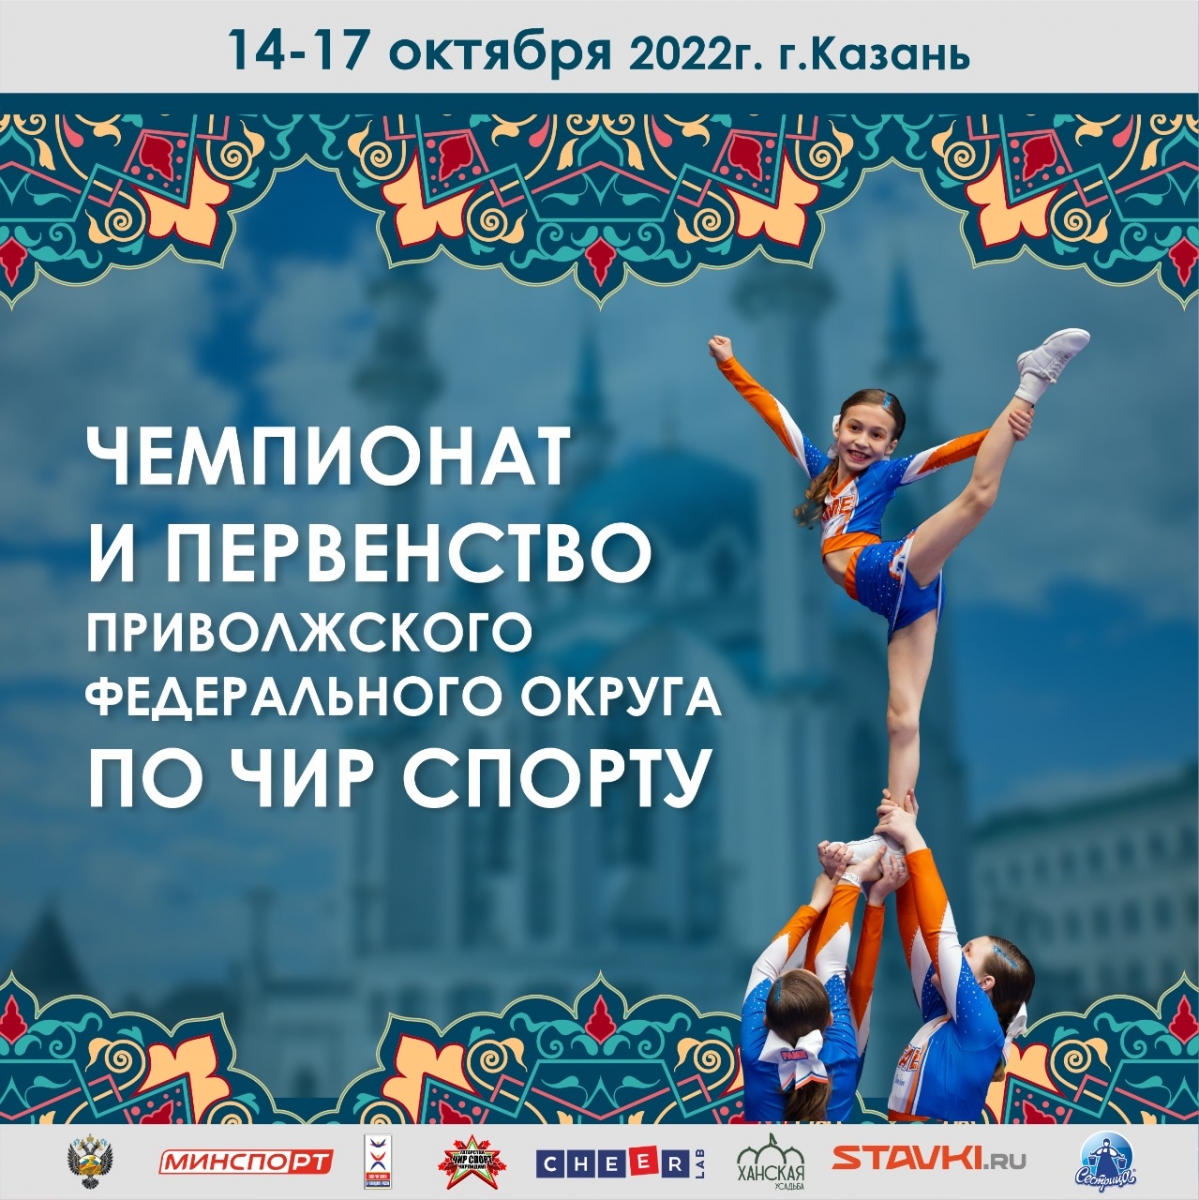 В Казани пройдет Чемпионат и Первенство Приволжского федерального округа по чир спорту